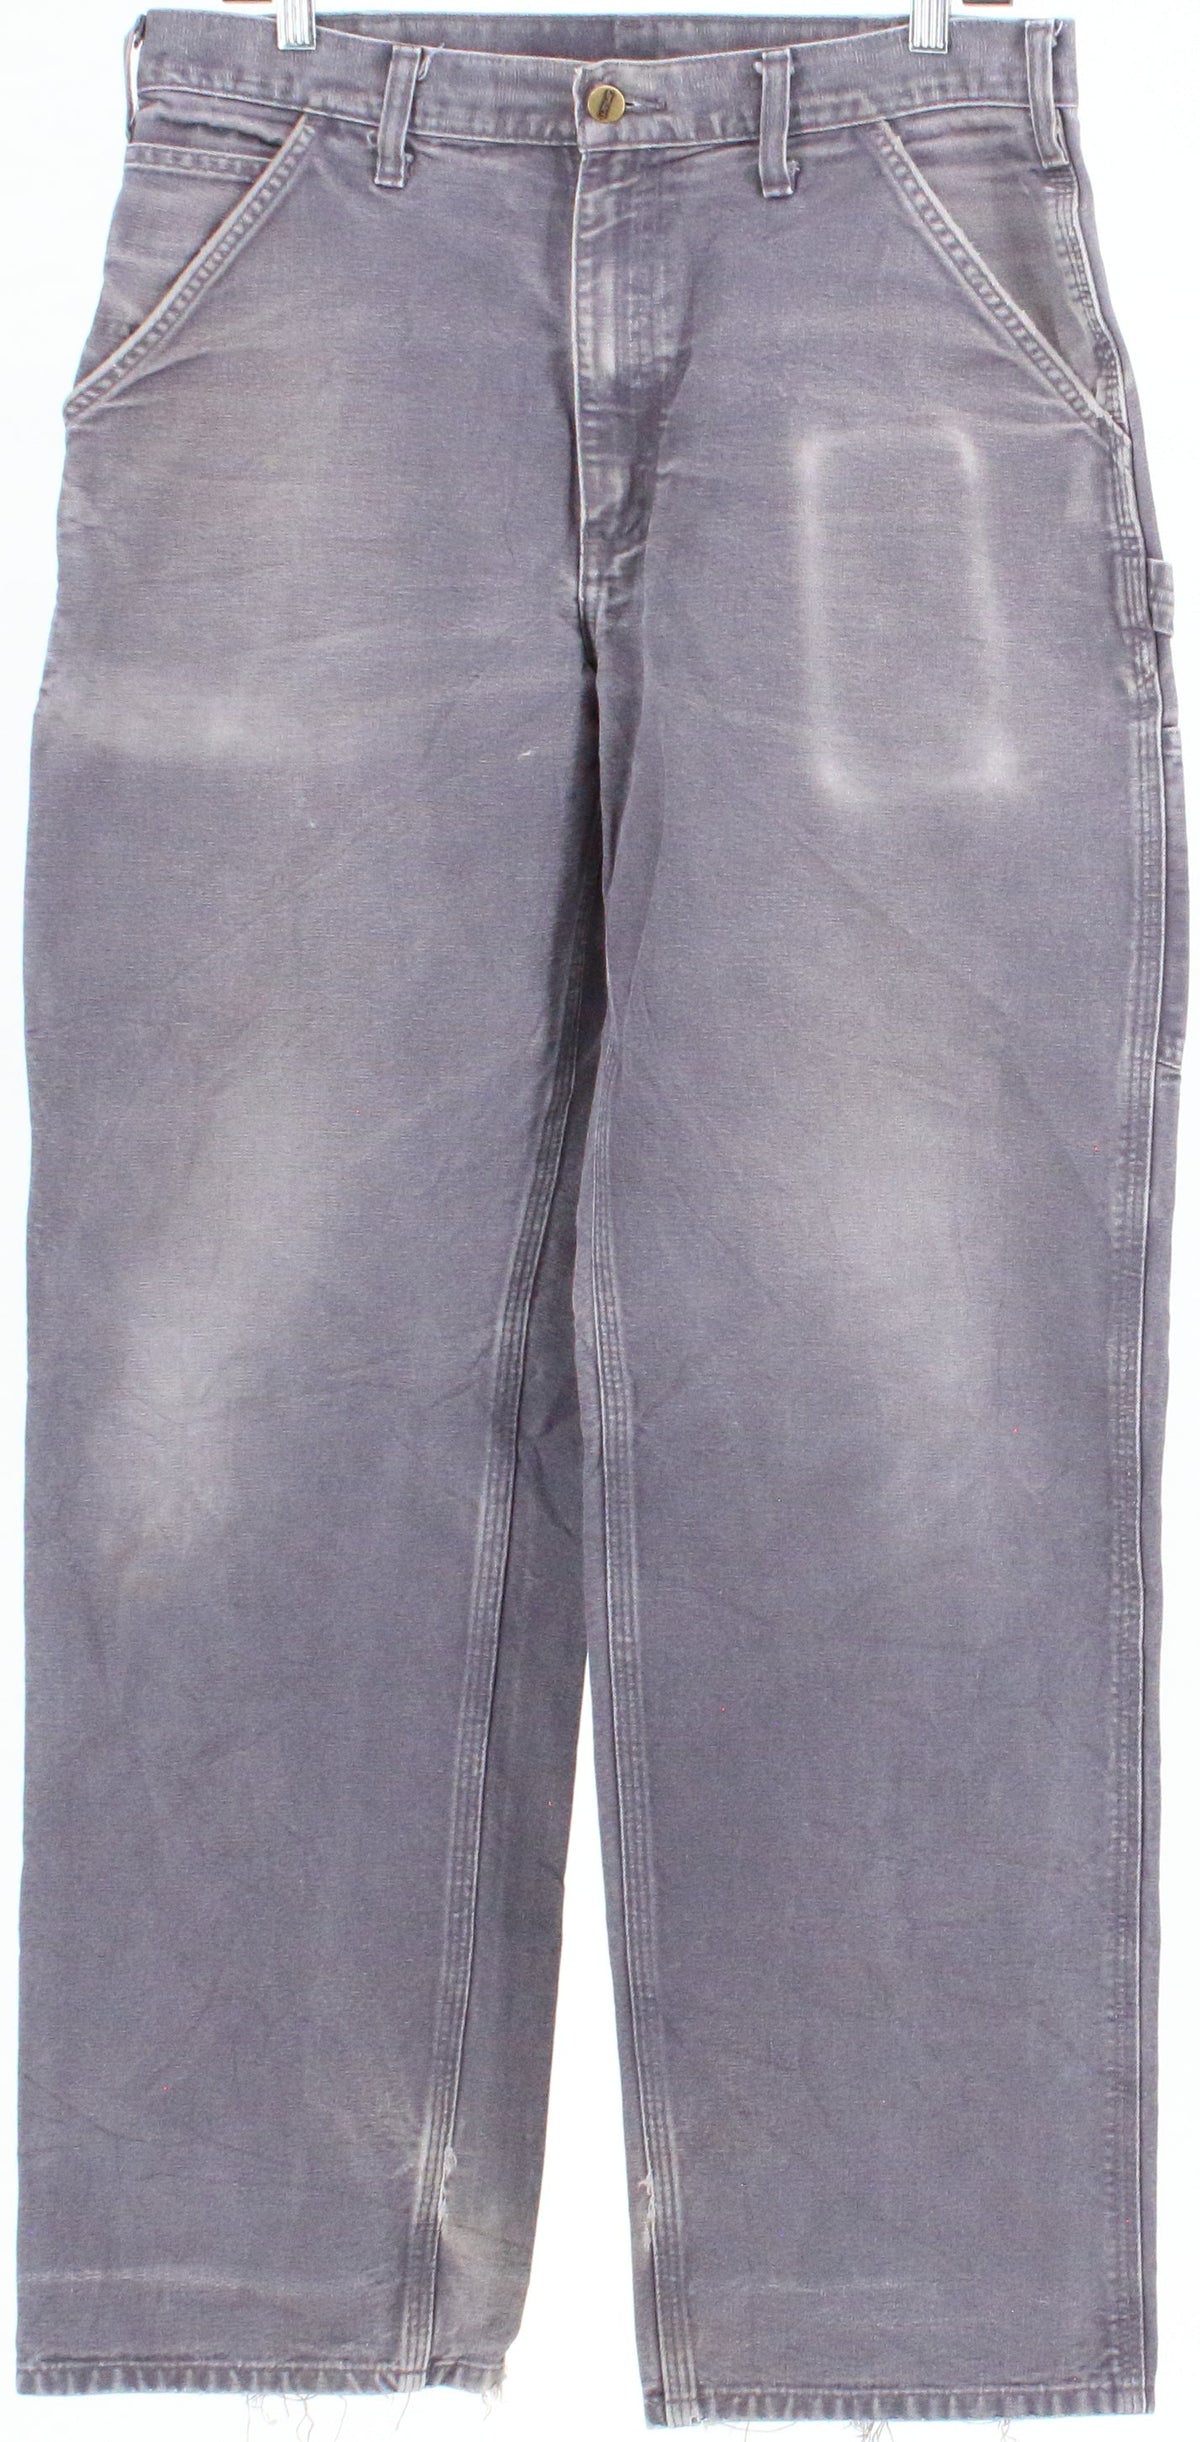 Carhartt B11 BTB Grey Stoned Original Dungaree Fit Cargo Pants